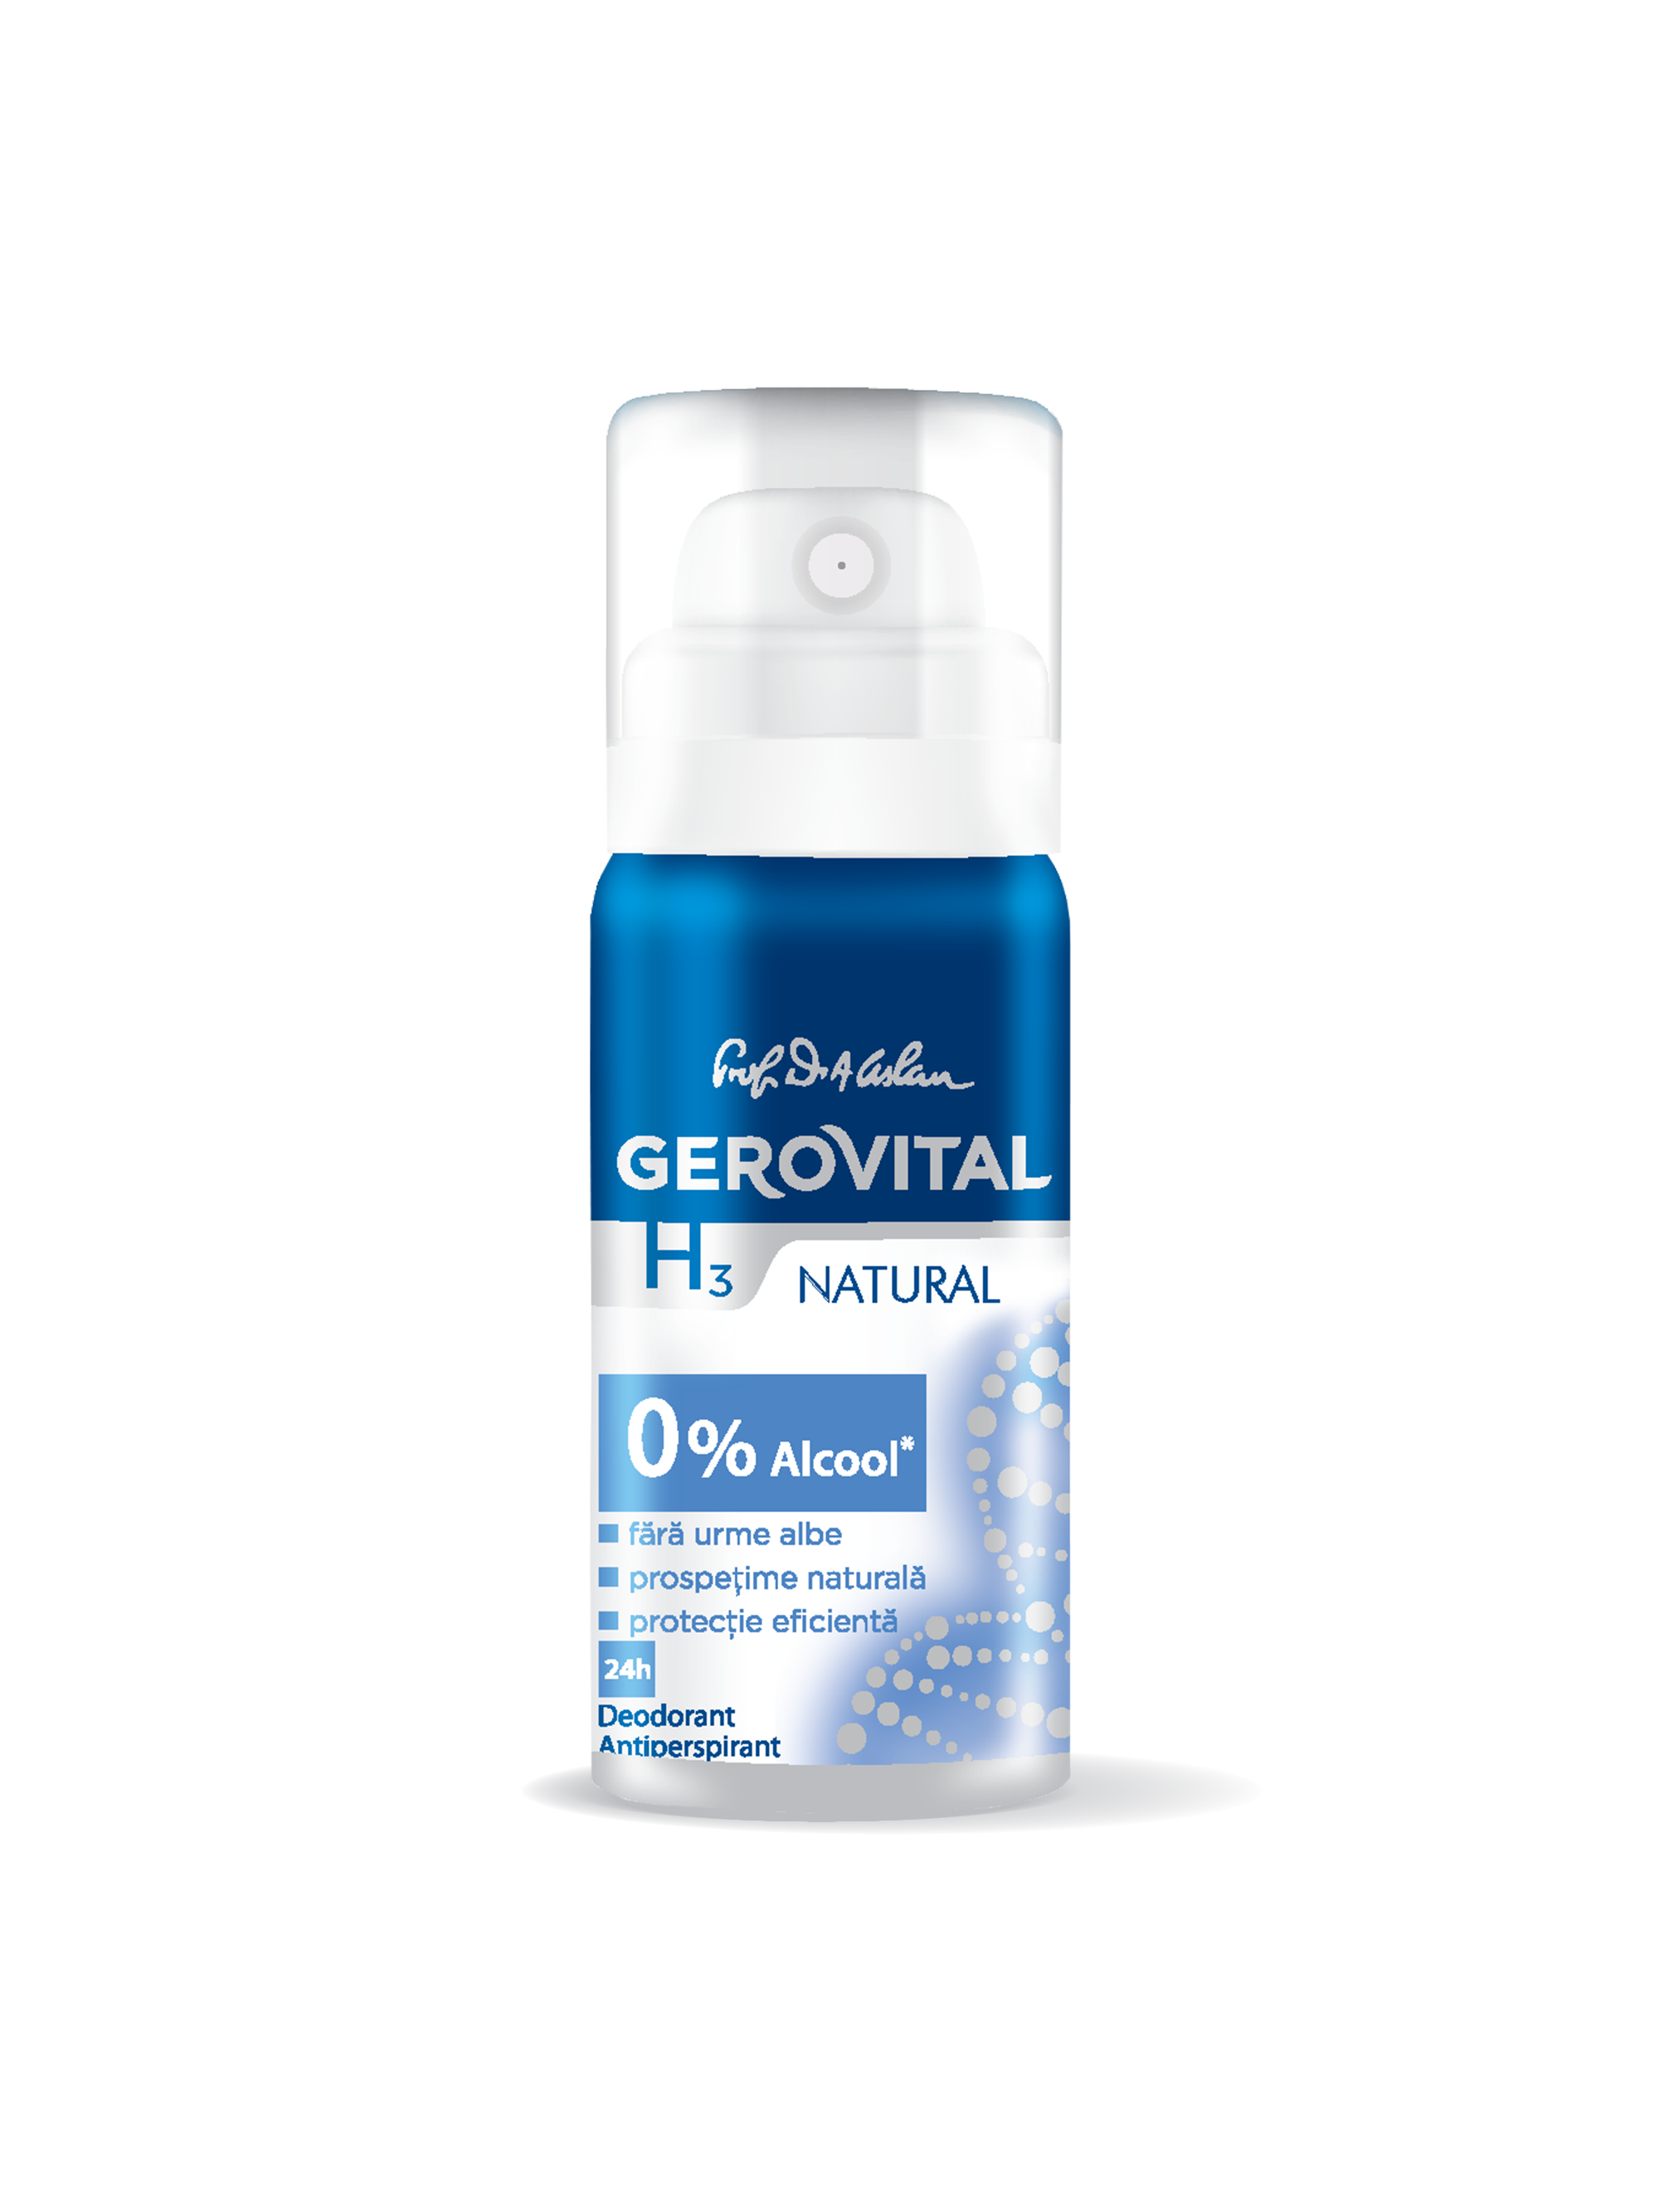 Deodorant Antiperspirant Gerovital H3- Natural 40 Ml Antiperspirant